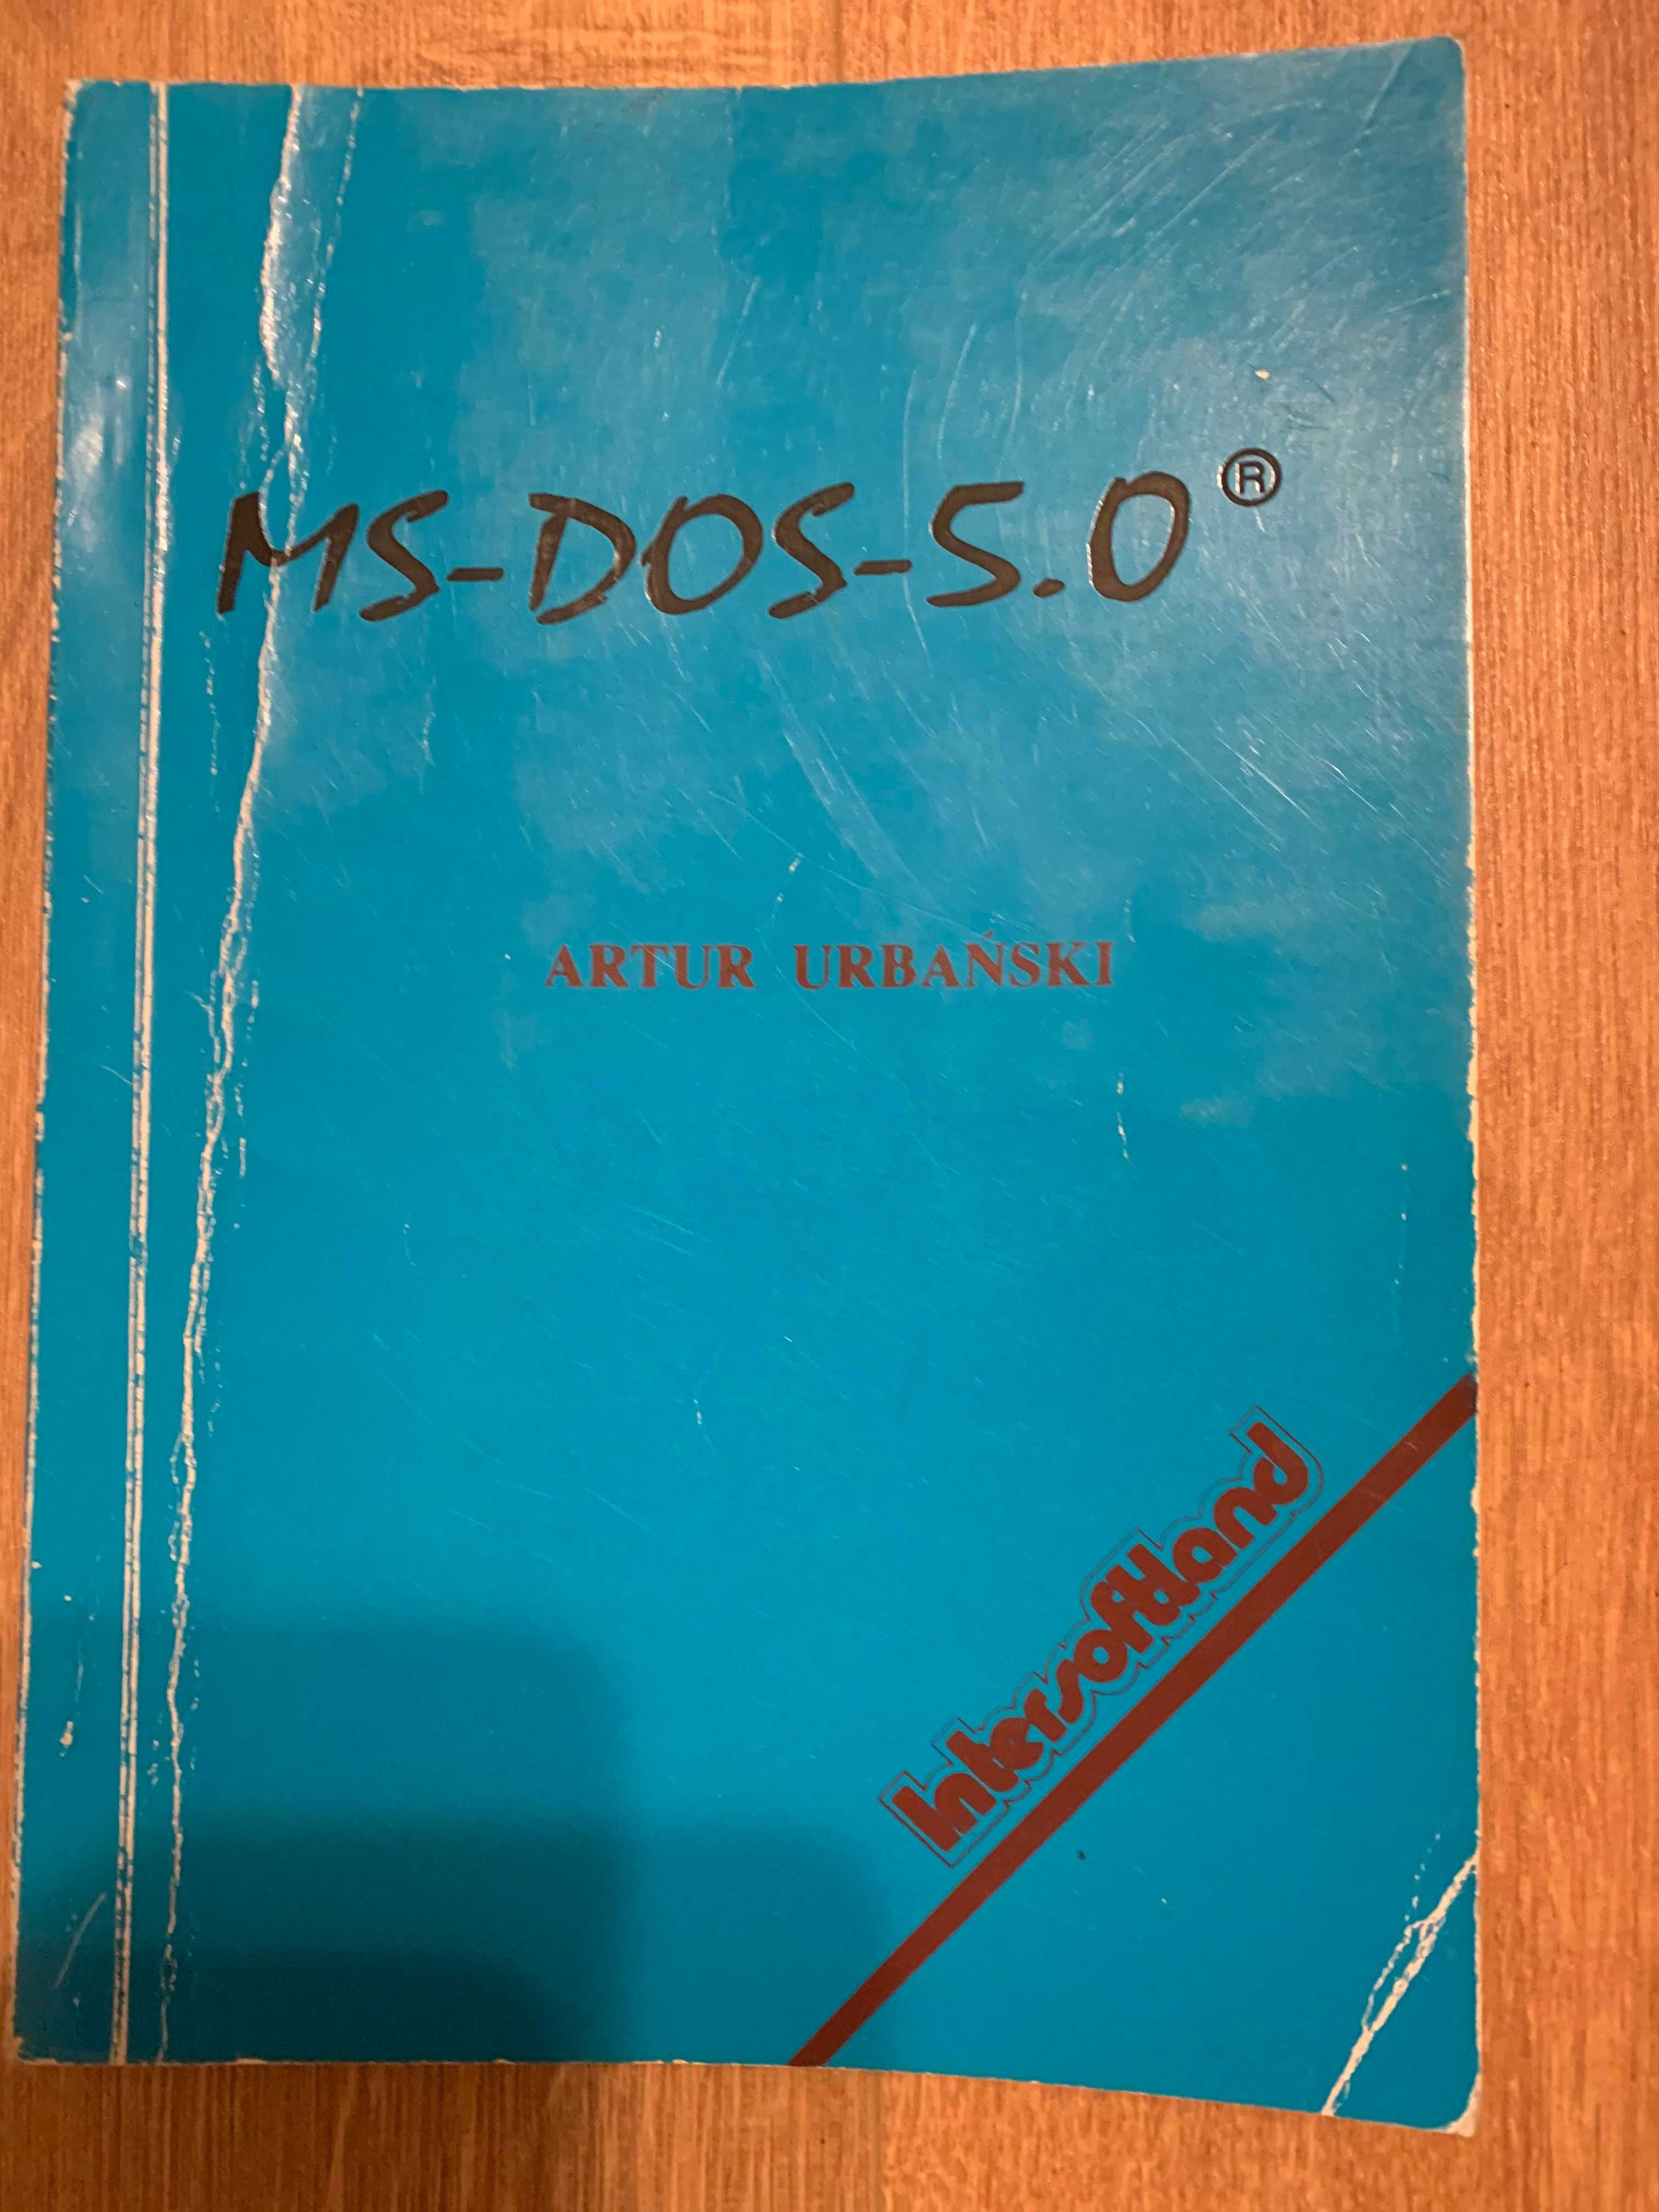 Podręcznik MS DOS 5.0